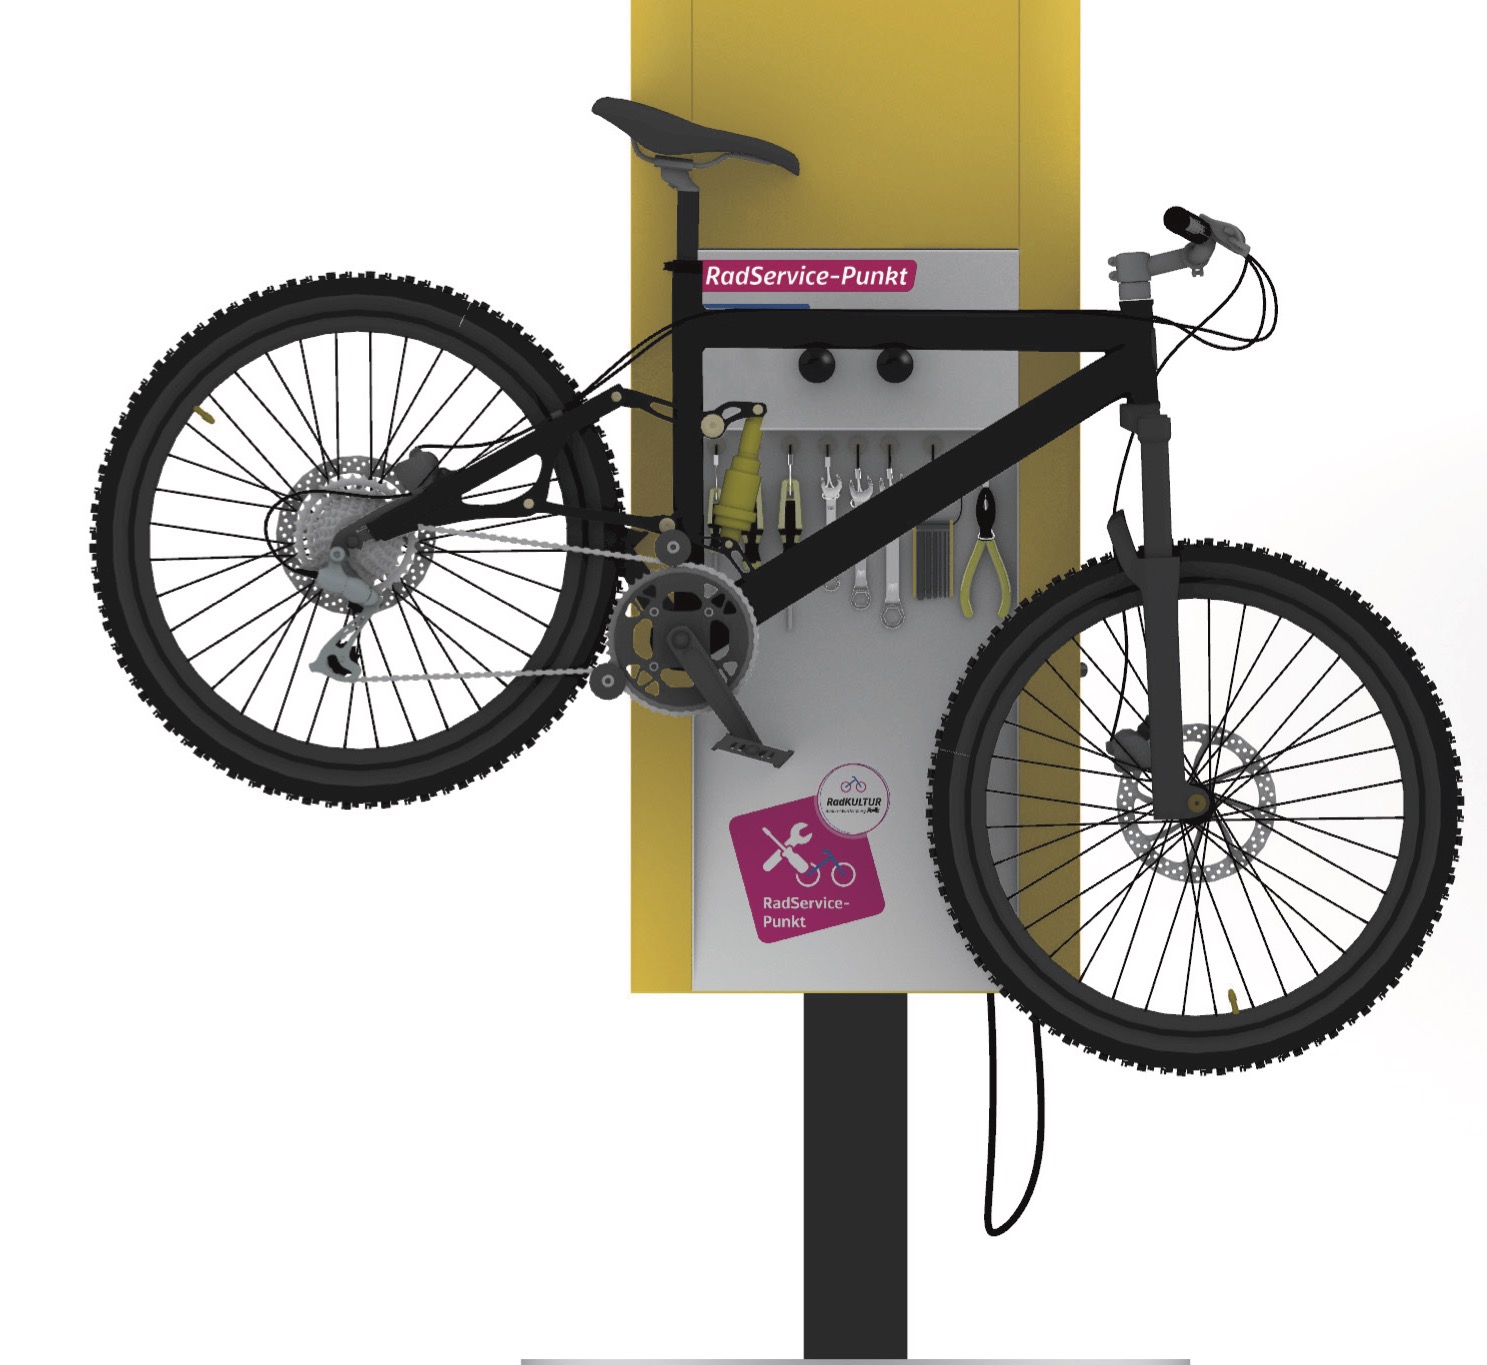 Ein Fahrrad ist an der Fahrradhalterung einer Radreparaturstation aufgehängt.